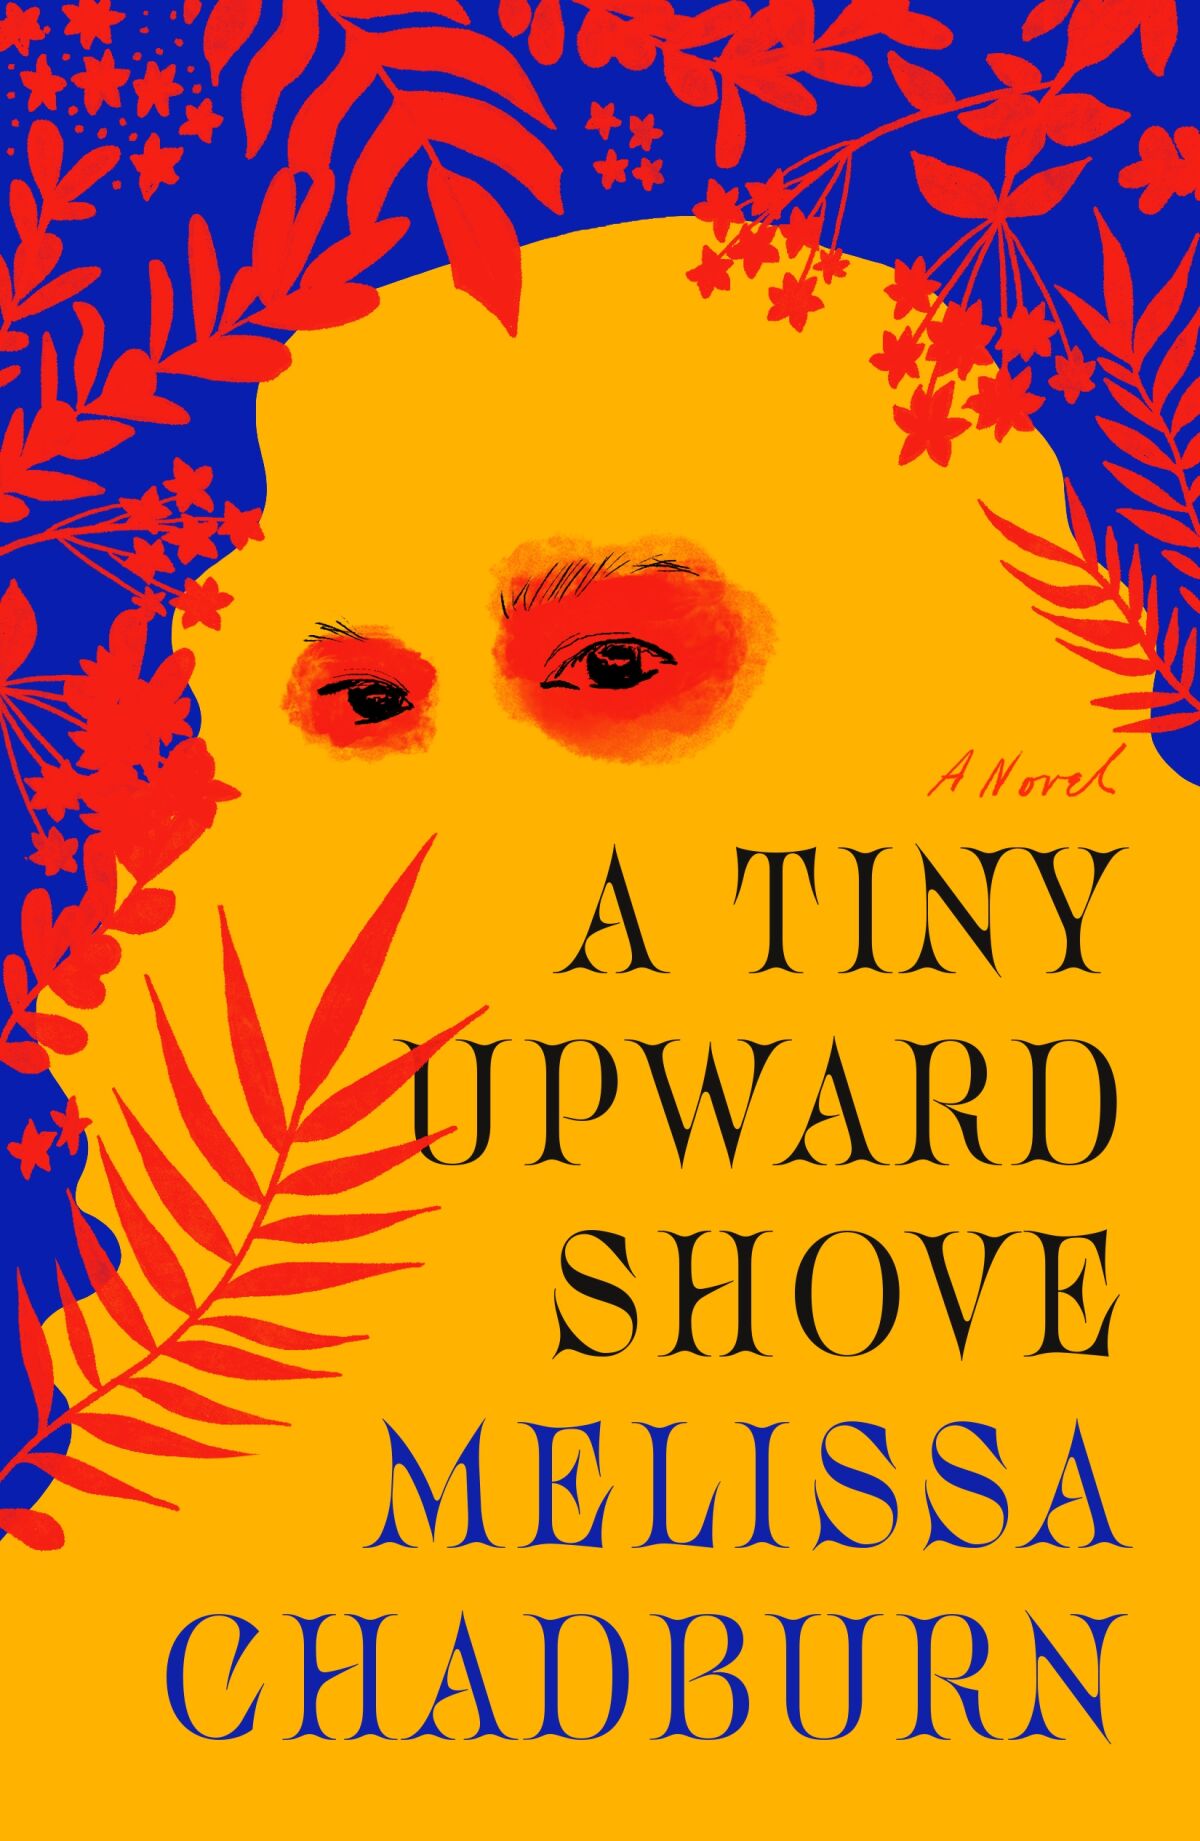 "A Tiny Upward Shove," by Melissa Chadburn